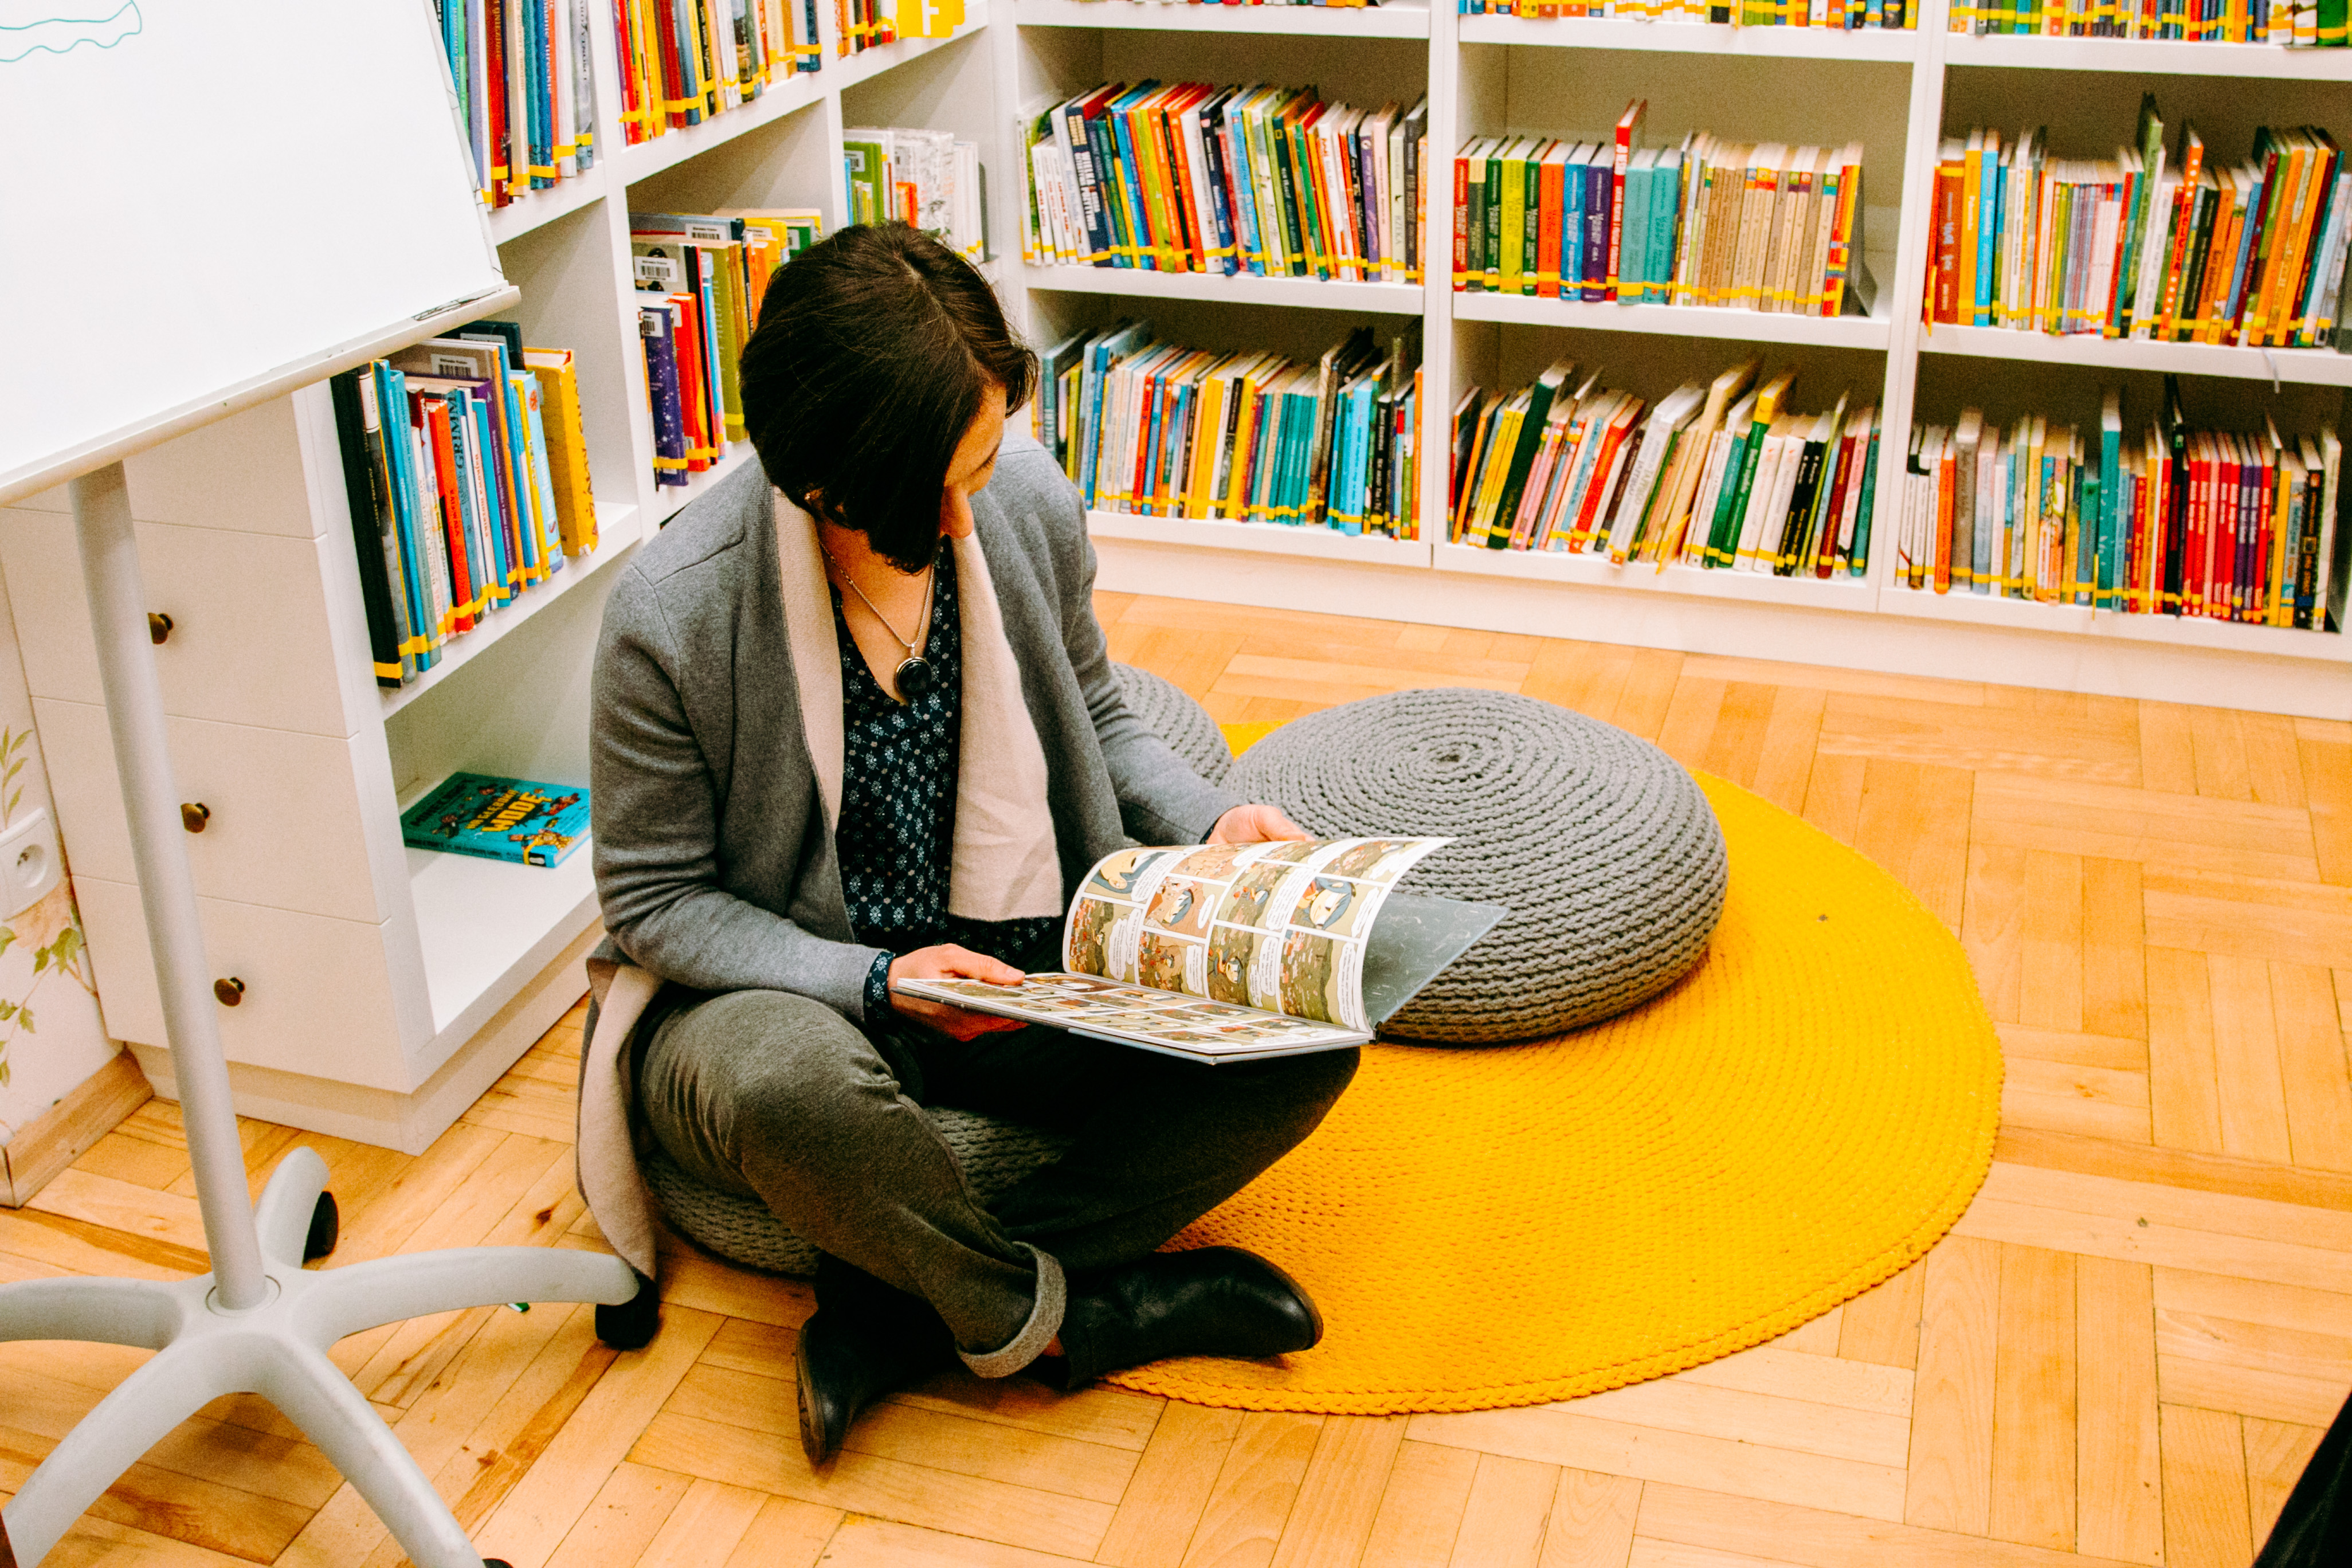 Frau im Schneidersitz auf dem Boden umgeben von Büchern liest ein Buch